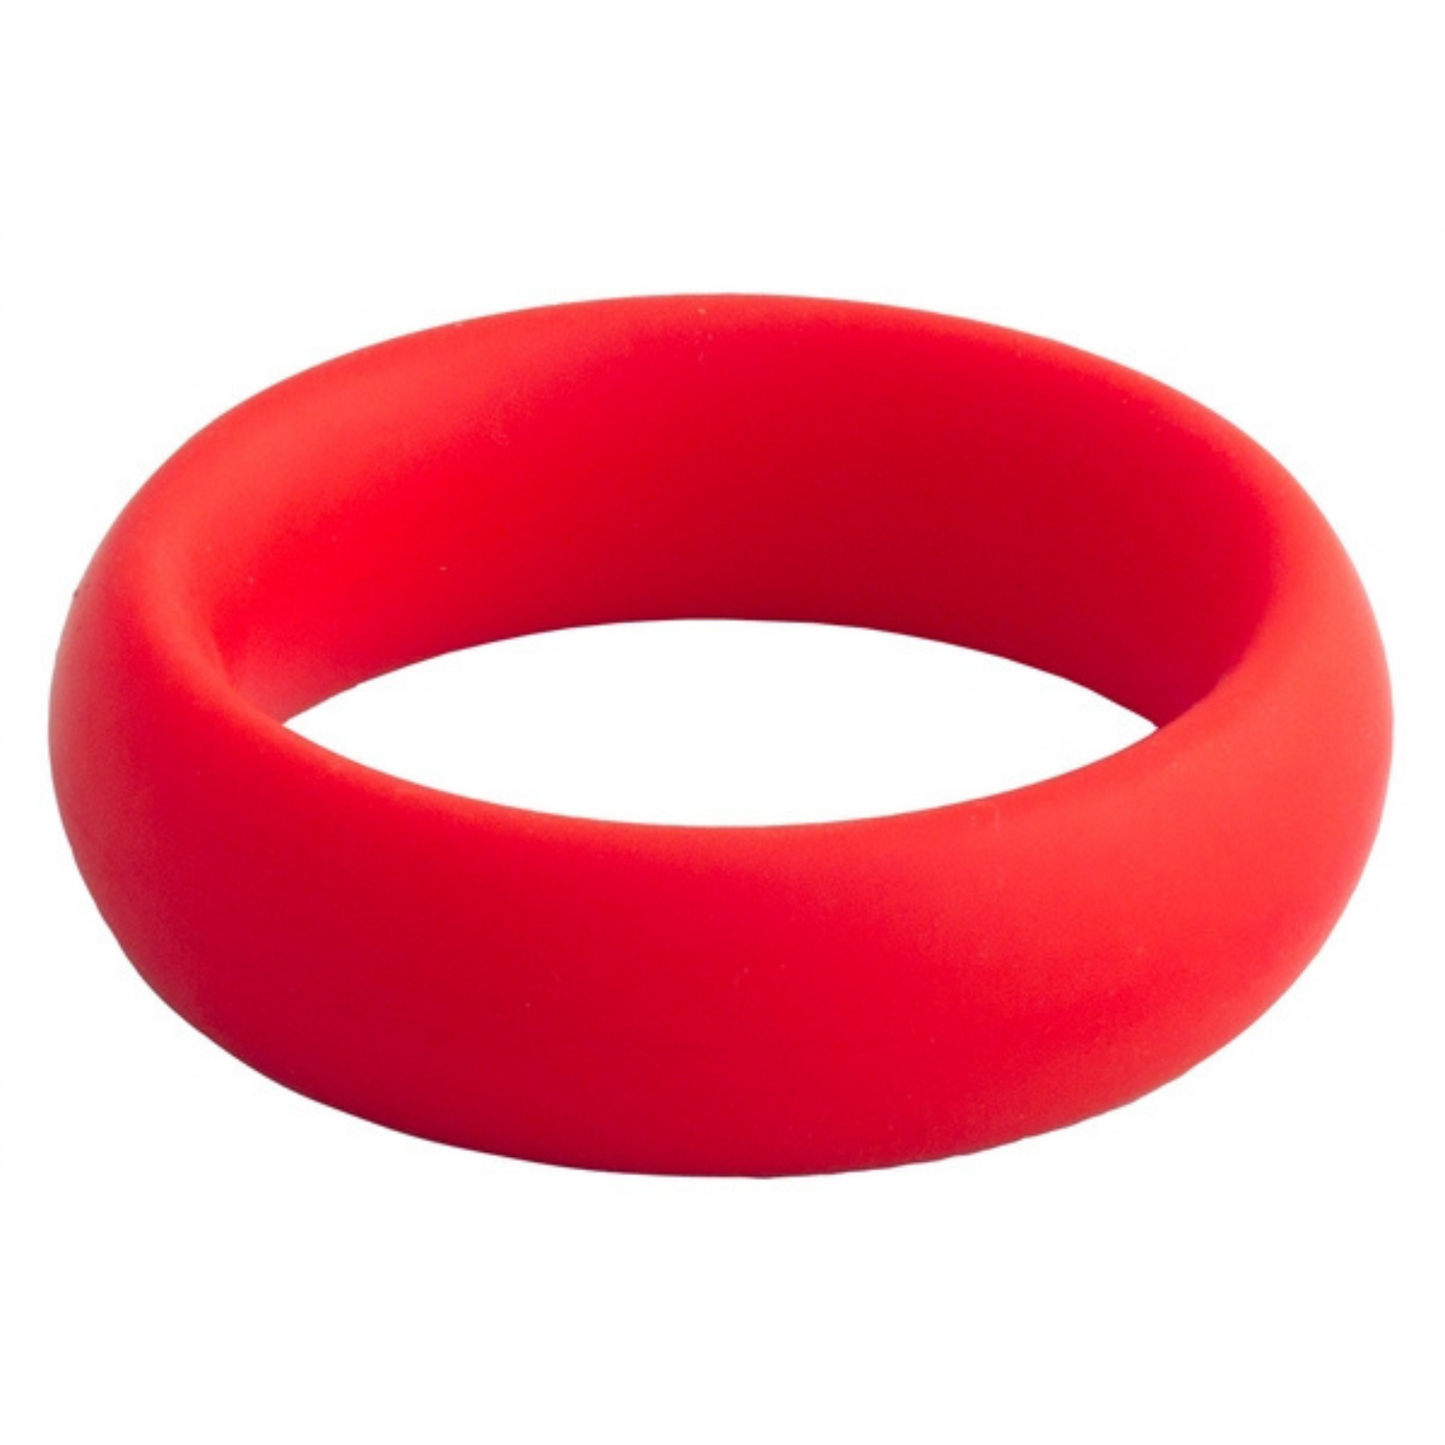 Rode donut cockring met een diameter van 45 mm. Ontworpen door Mister B voor gay mannen en te koop bij Flavourez.